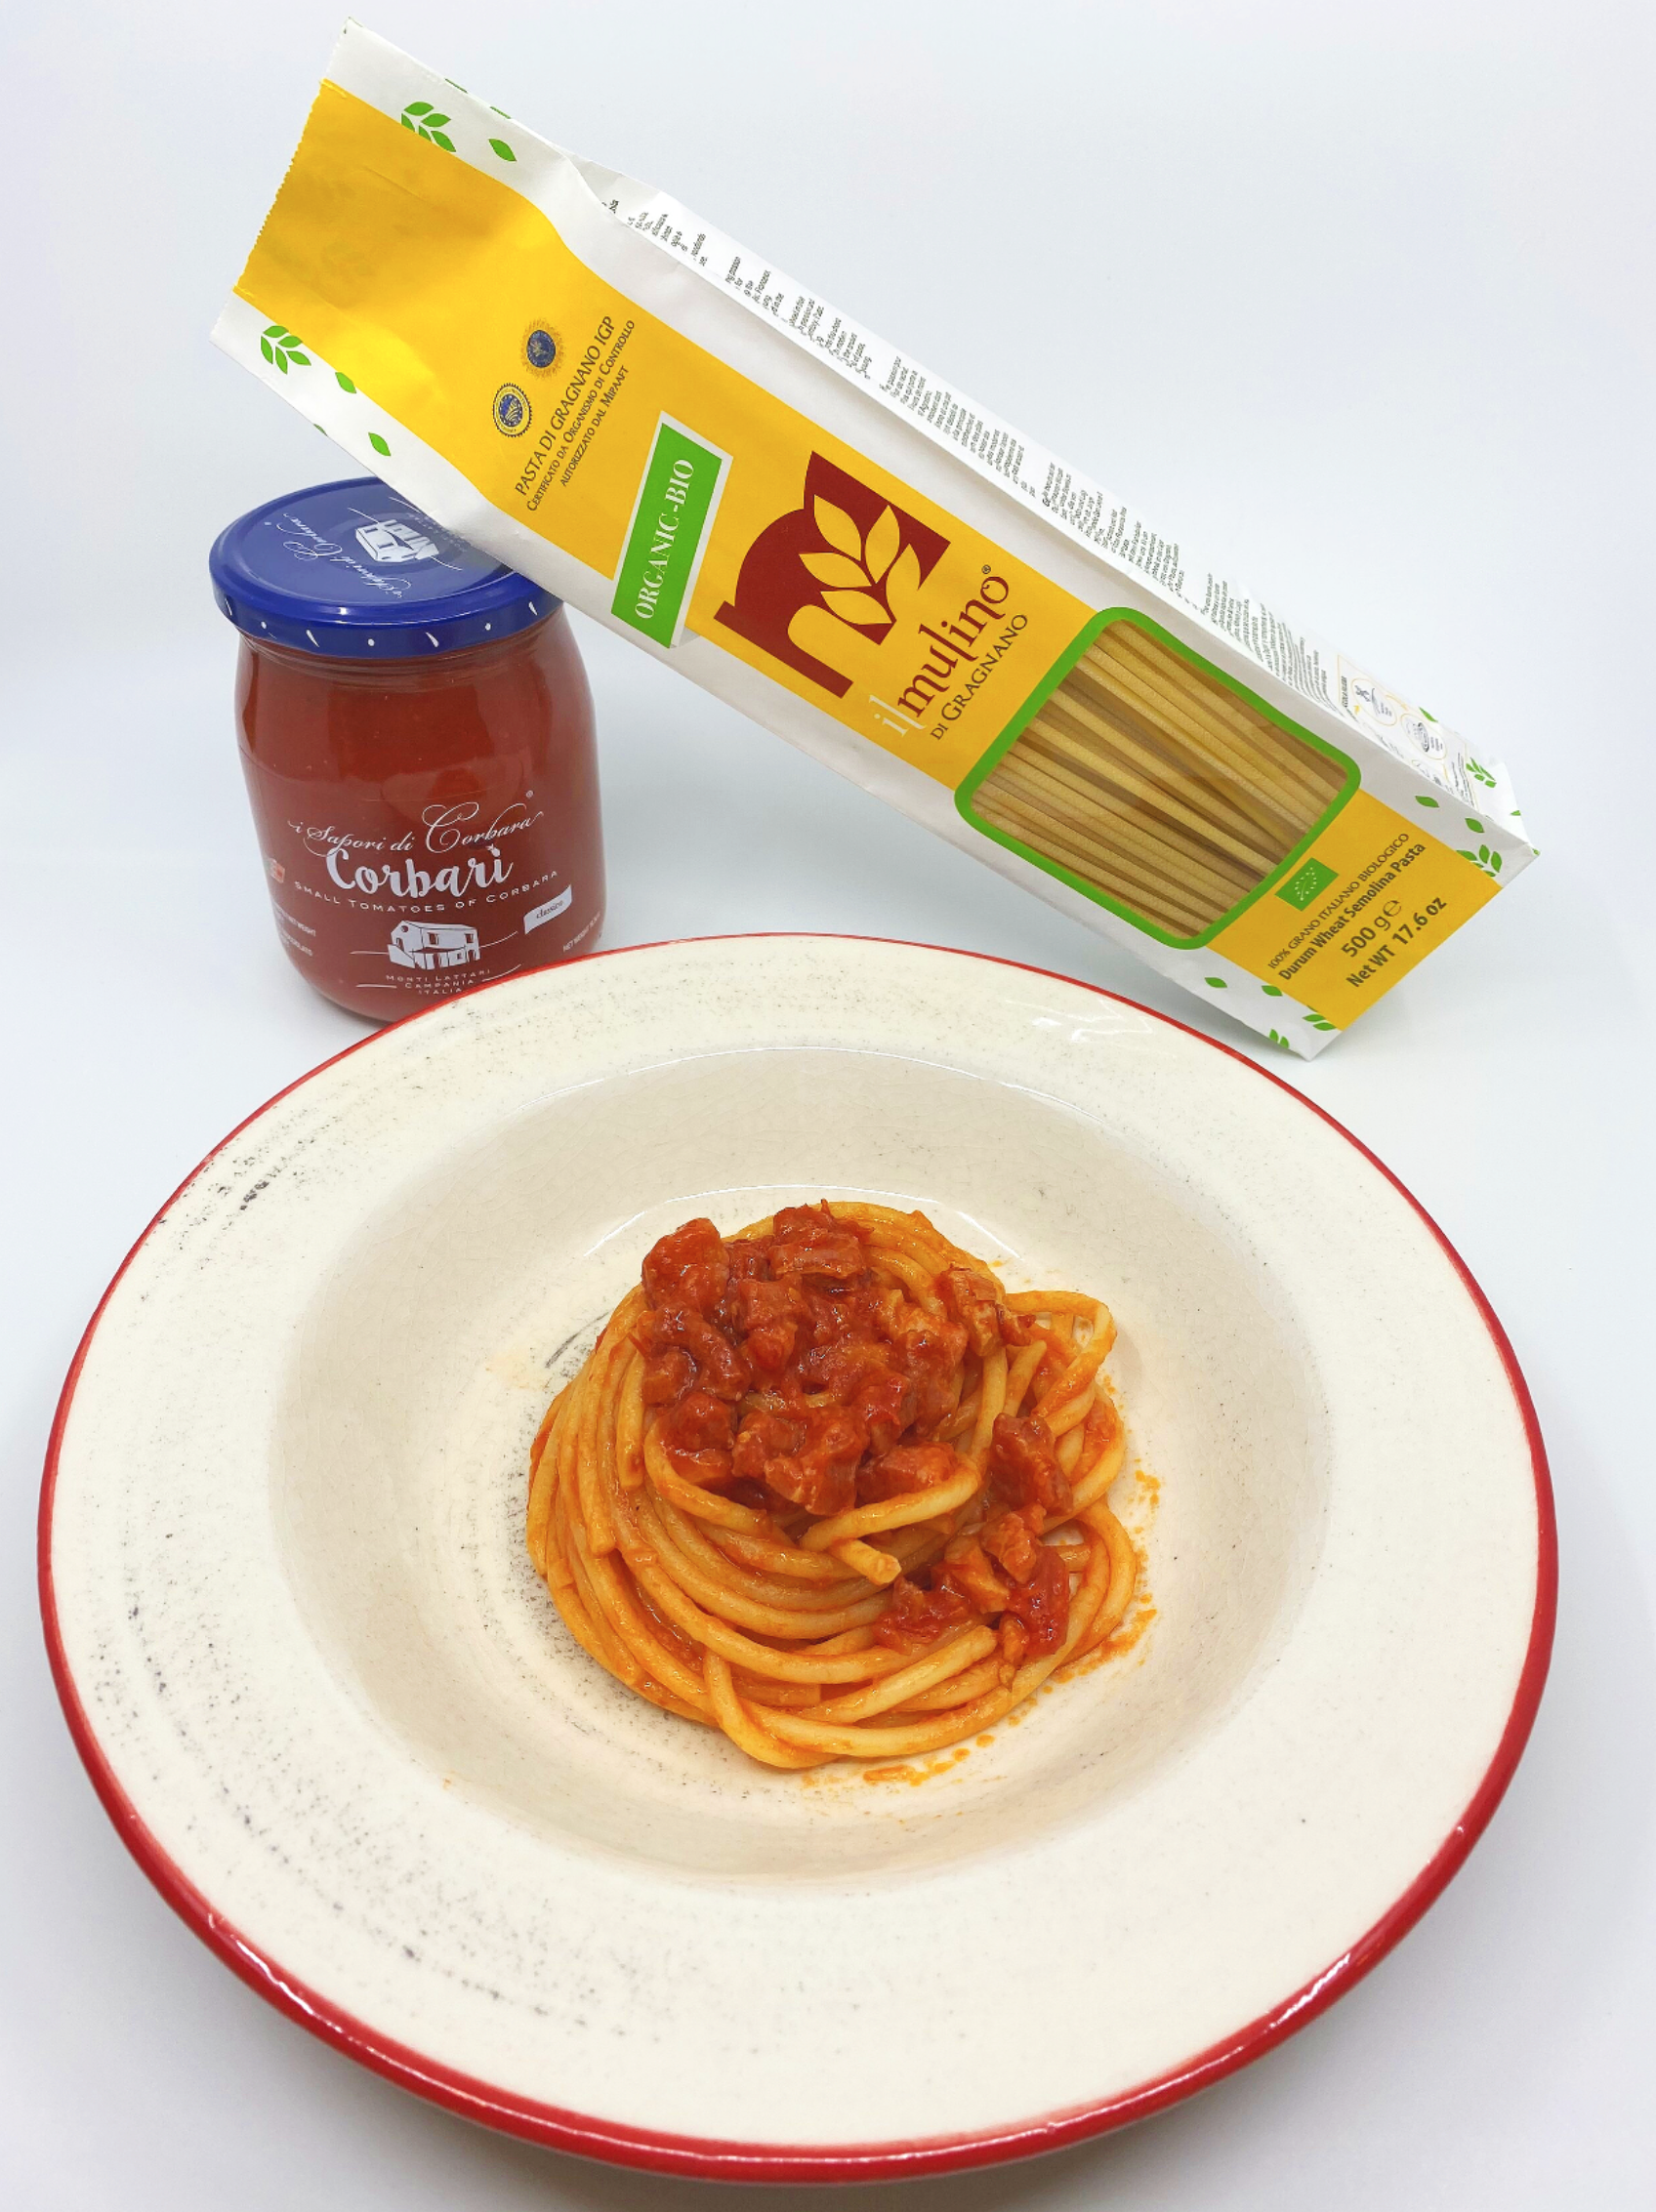 Spaghetti all Chitarra di Gragnano IGP - 17.6 oz